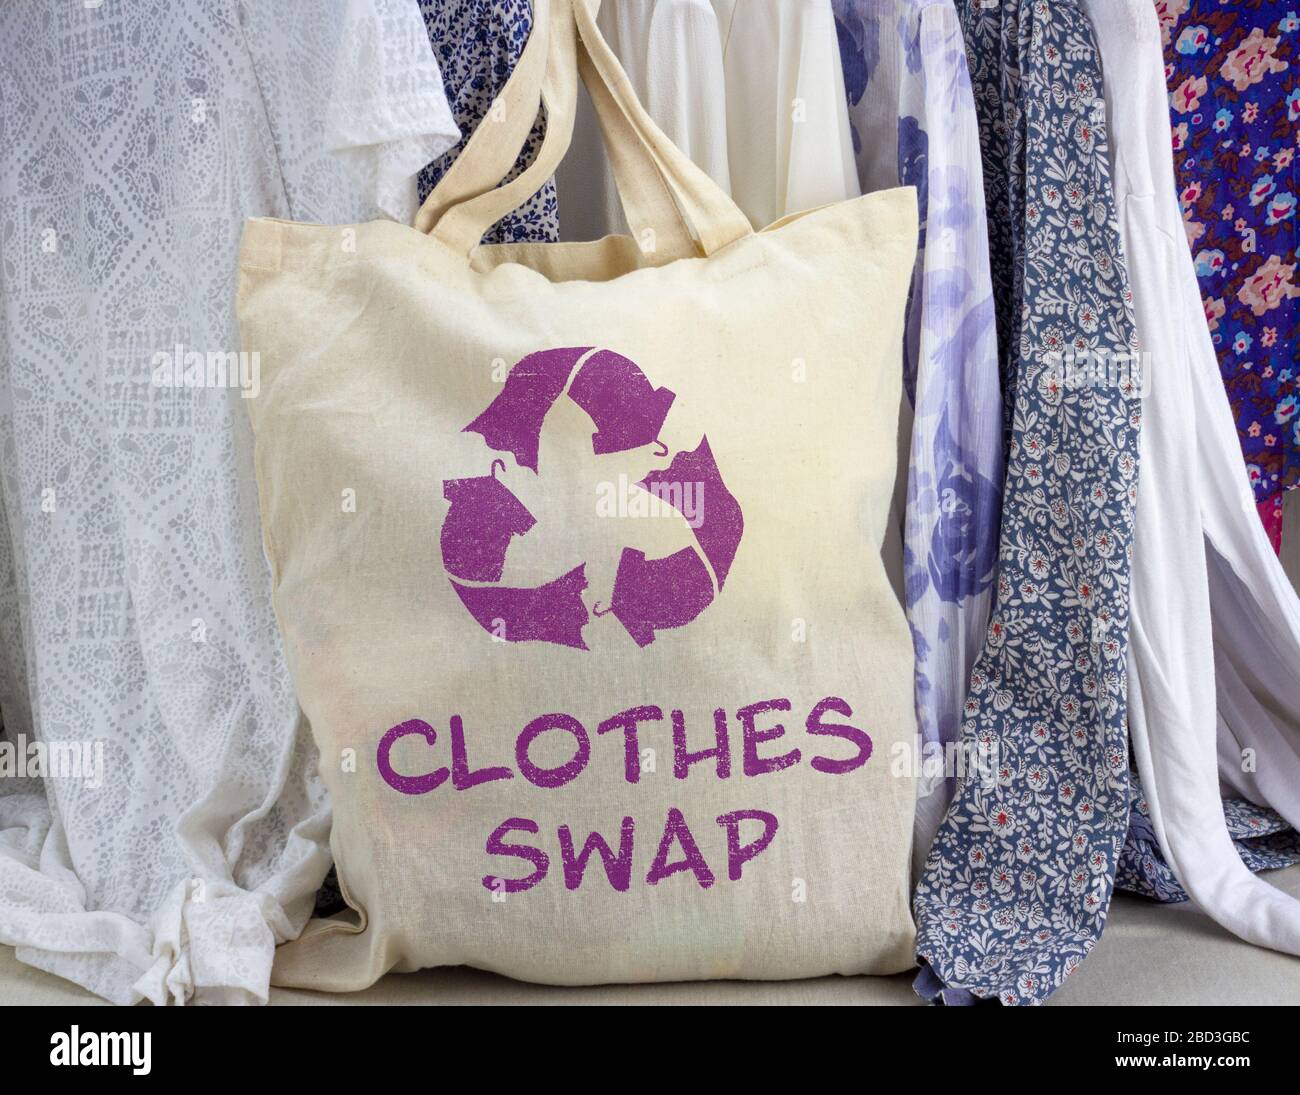 Kleidung tauschen wiederverwendbare Tüten gegen Recycling-Textilien-Symbol vor dem Kleiderrahmen aus. Recyceln Sie Kleidung für ein nachhaltiges Leben. Stockfoto